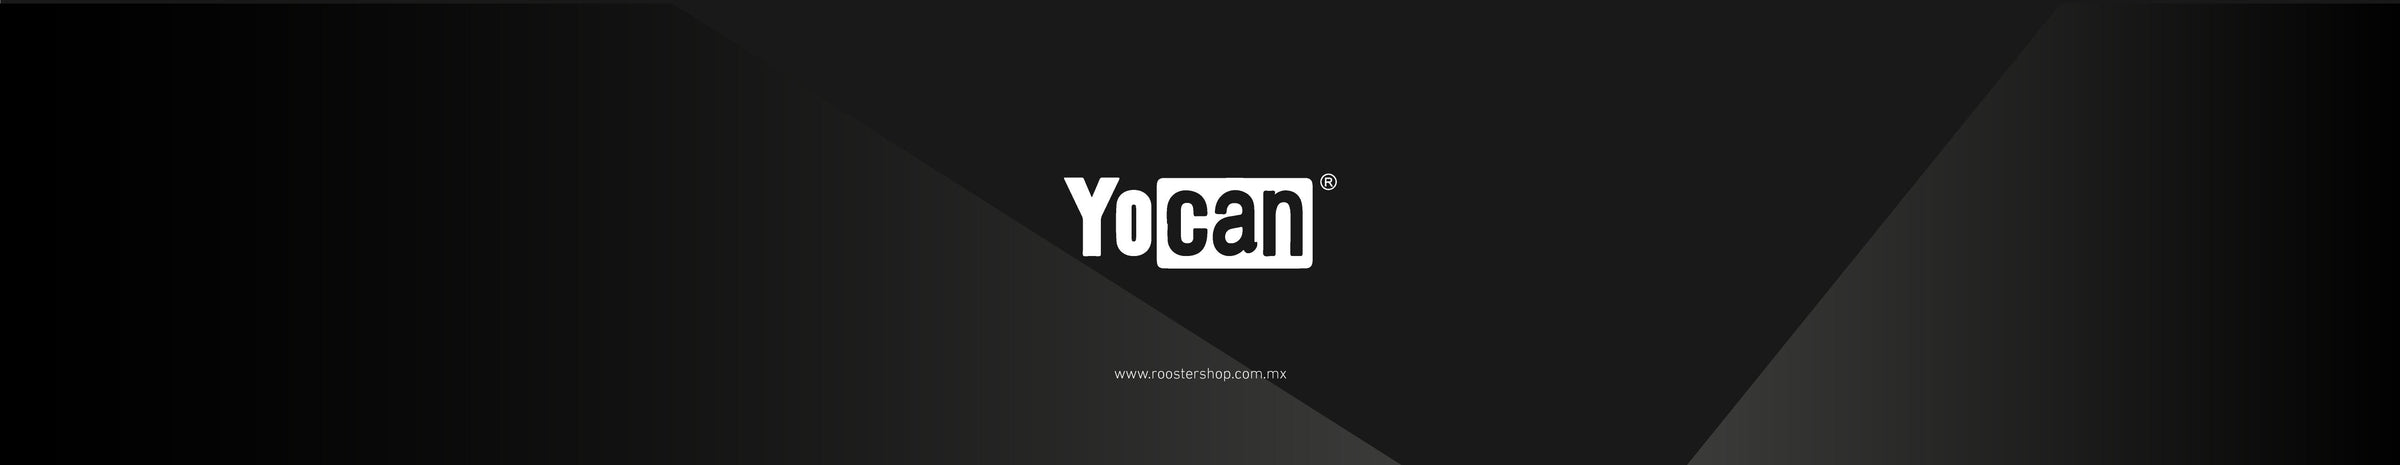 Yocan Mexico Distribuidor Oficial Repuestos y Accesorios